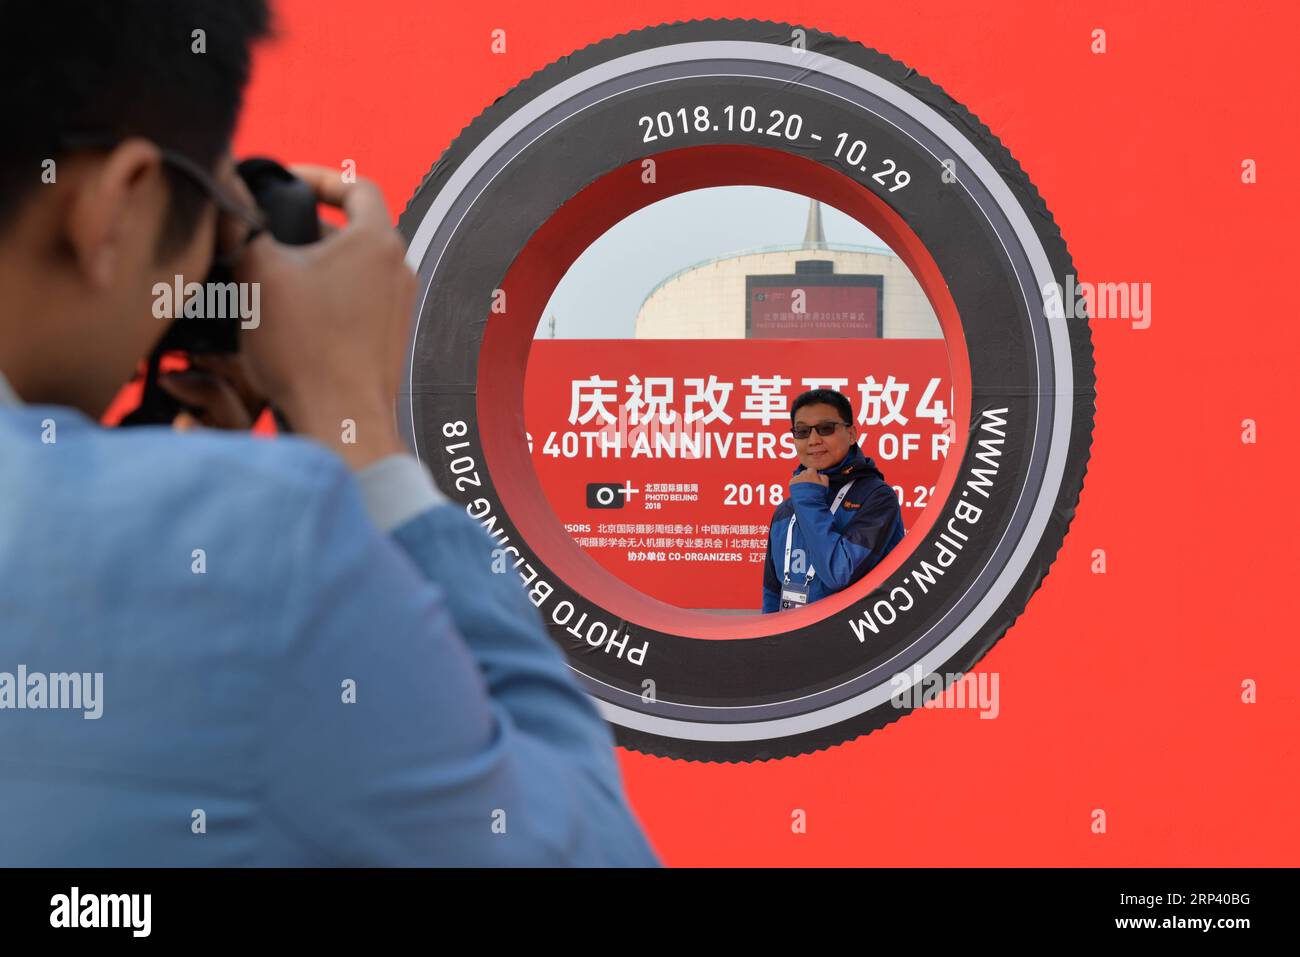 (181020) -- PEKING, 20. Oktober 2018 (Xinhua) -- Ein Gast posiert für Fotos bei der Eröffnungszeremonie von Foto Peking 2018 am China Millennium Monument in Peking, Hauptstadt von China, 20. Oktober 2018. Photo Beijing 2018, eine internationale Fotoveranstaltung, wurde hier am Samstag eröffnet. Vom 20. Bis 29. Oktober findet eine Reihe von Ausstellungen, Vorträgen, Märkten und besonderen Aktivitäten statt. (Xinhua/Xu Qin)(lmm) CHINA-BEIJING-ART-PHOTOGRAPHY-EVENT (CN) PUBLICATIONxNOTxINxCHN Stockfoto